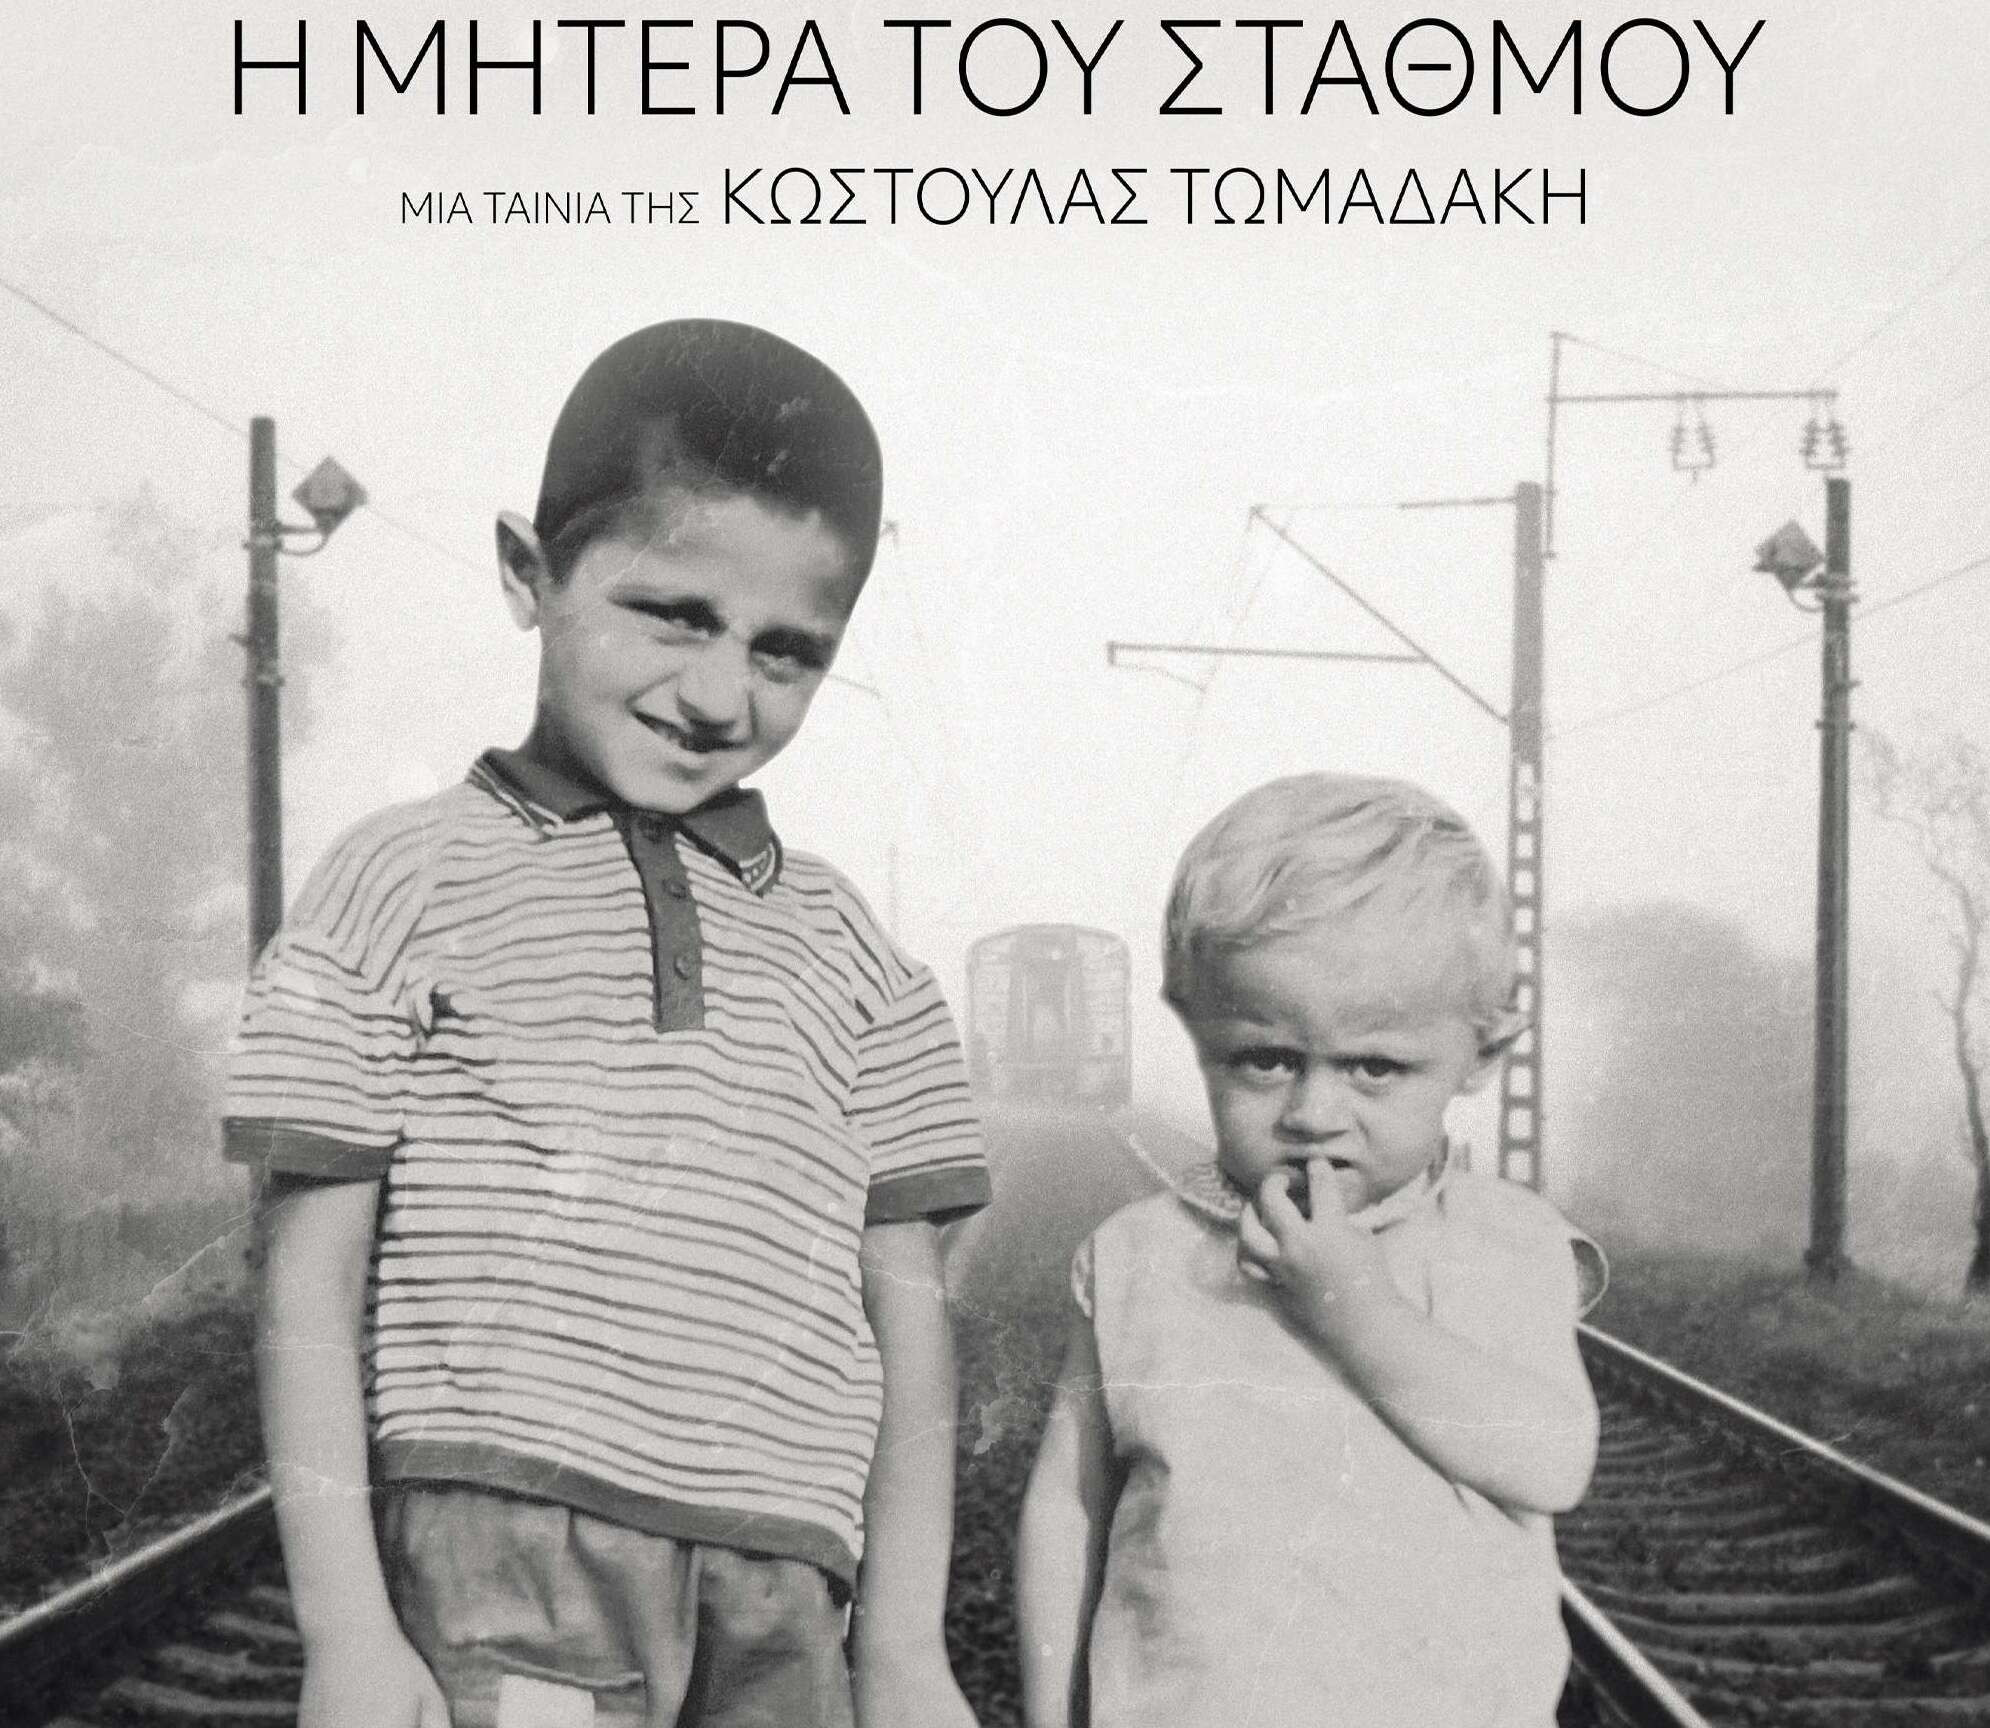 «Η Μητέρα του σταθμού» στο  25ο Φεστιβάλ Ντοκιμαντέρ Θεσσαλονίκης